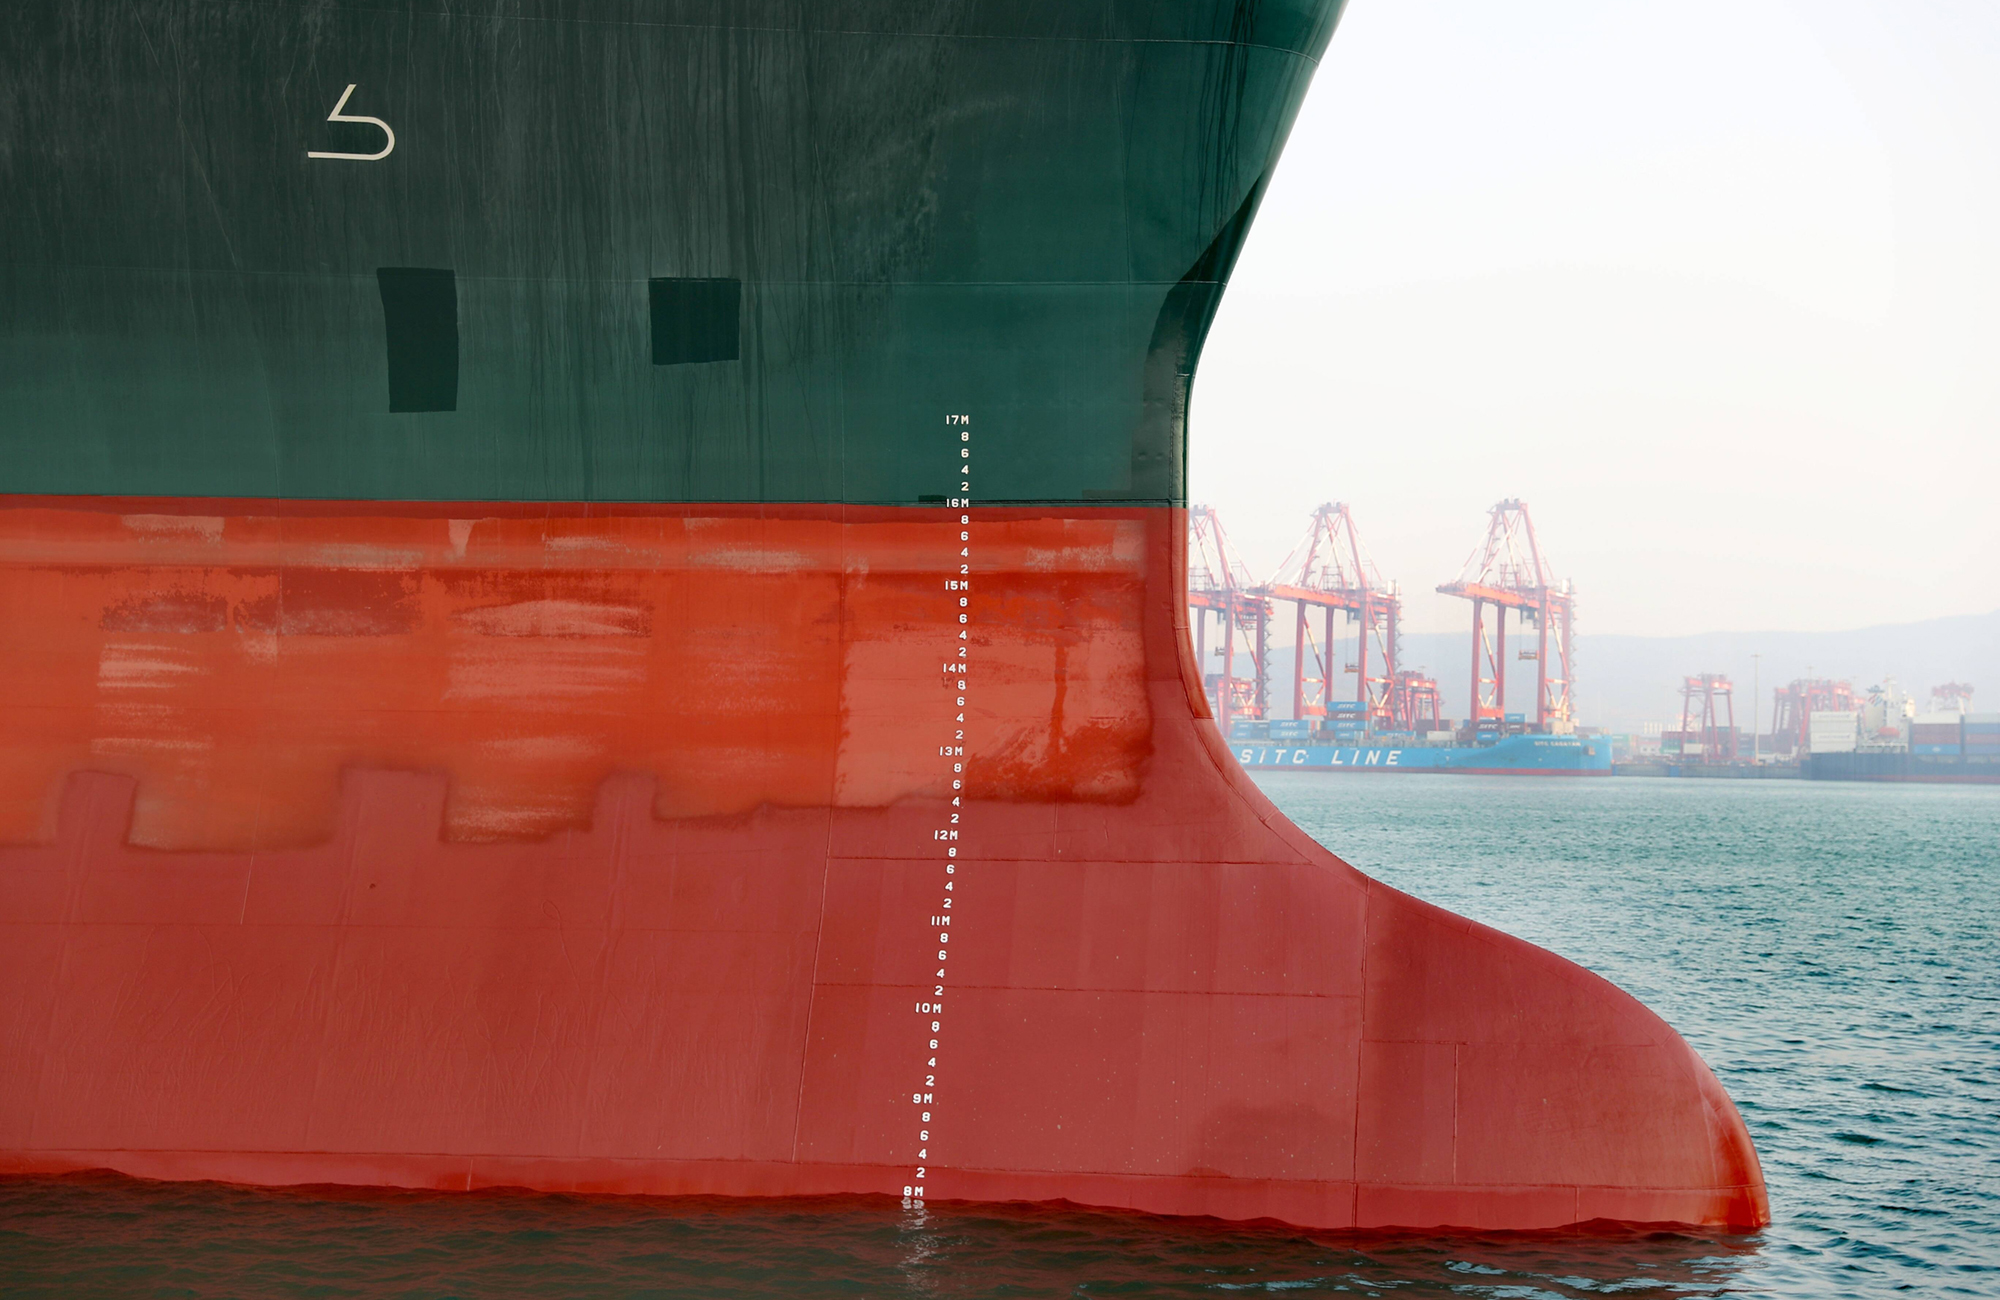 Das Containerschiff Ever Given der Reederei Evergreen im November 2021 im Hafen von Qingdao. Das Schiff, das Anfang des Jahres den Verkehr im ägyptischen Suezkanal blockiert hatte, wurde dort repariert und startete am 14. November erneut auf seiner Frachtroute zwischen Asien und Europa. Foto: IMAGO / VCG